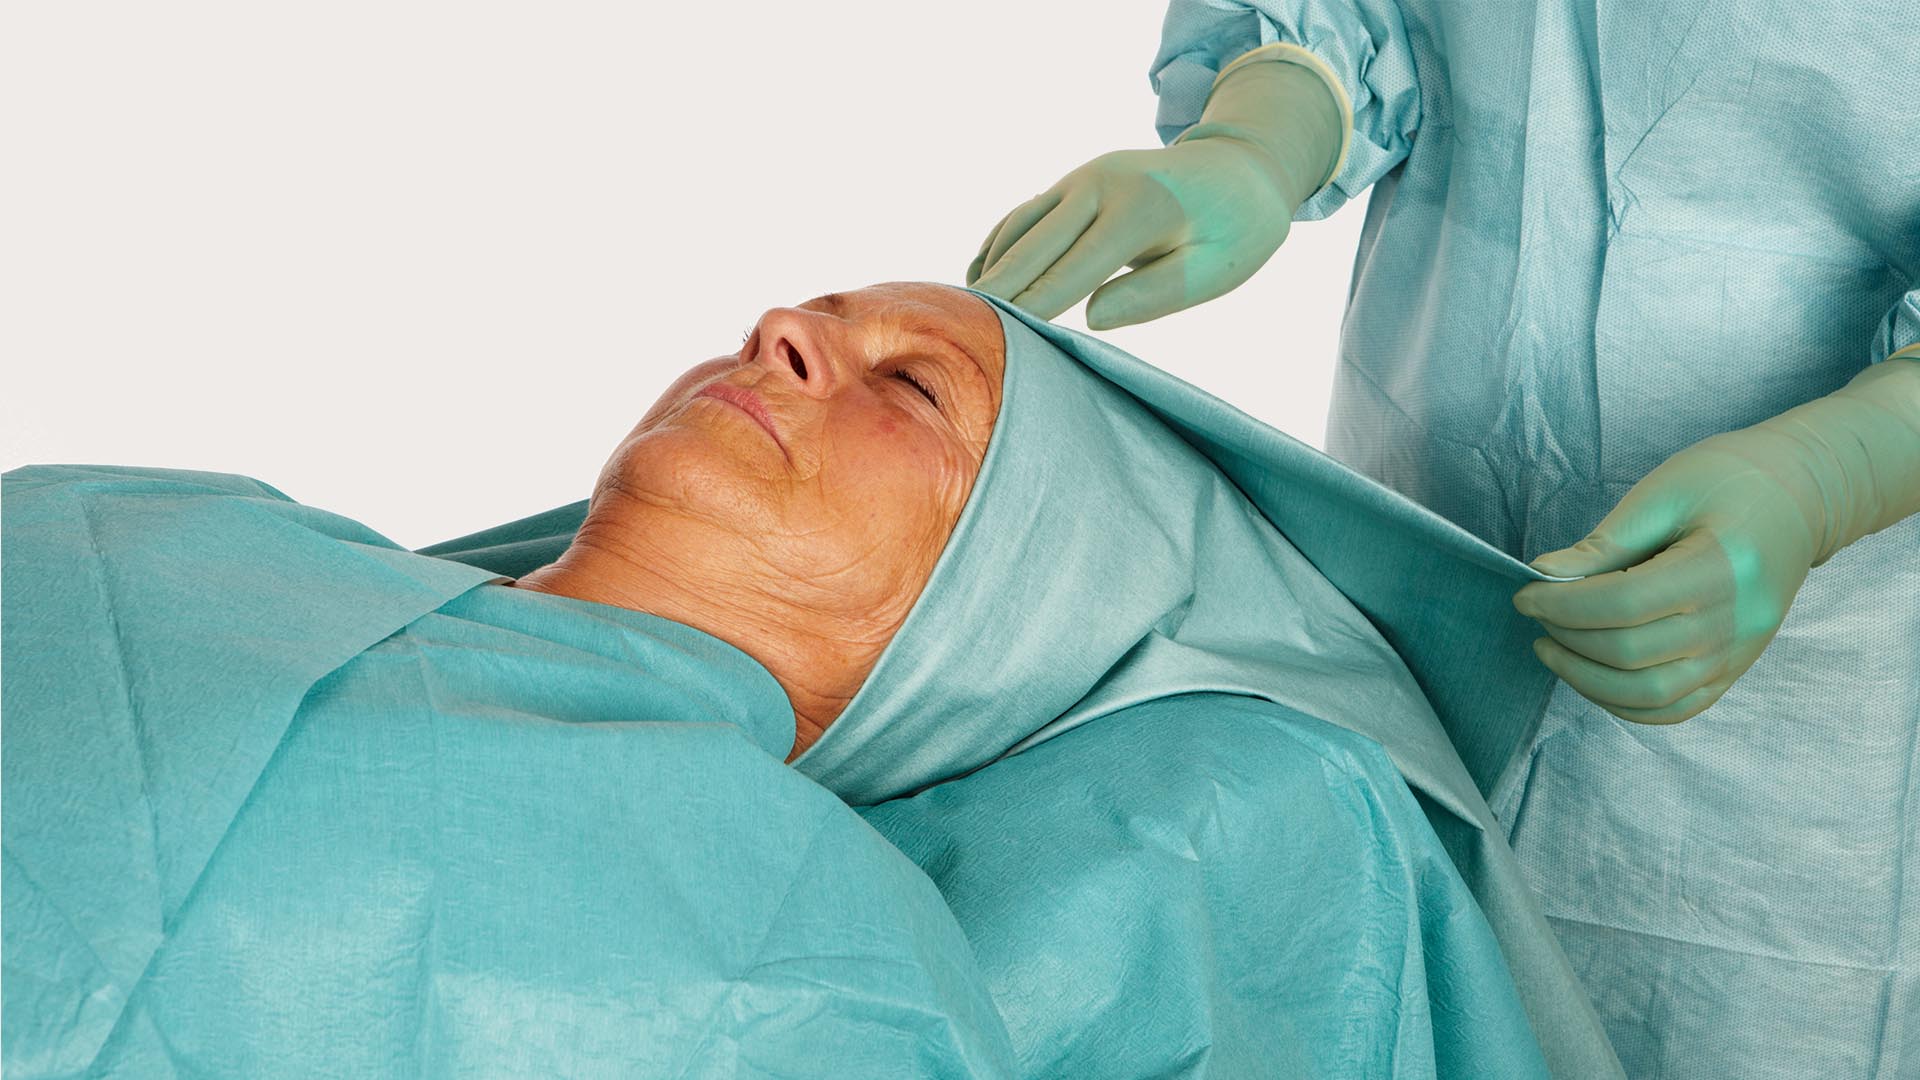 hoofd van een vrouwelijke patiënt bedekt met barrier kno afdeklaken